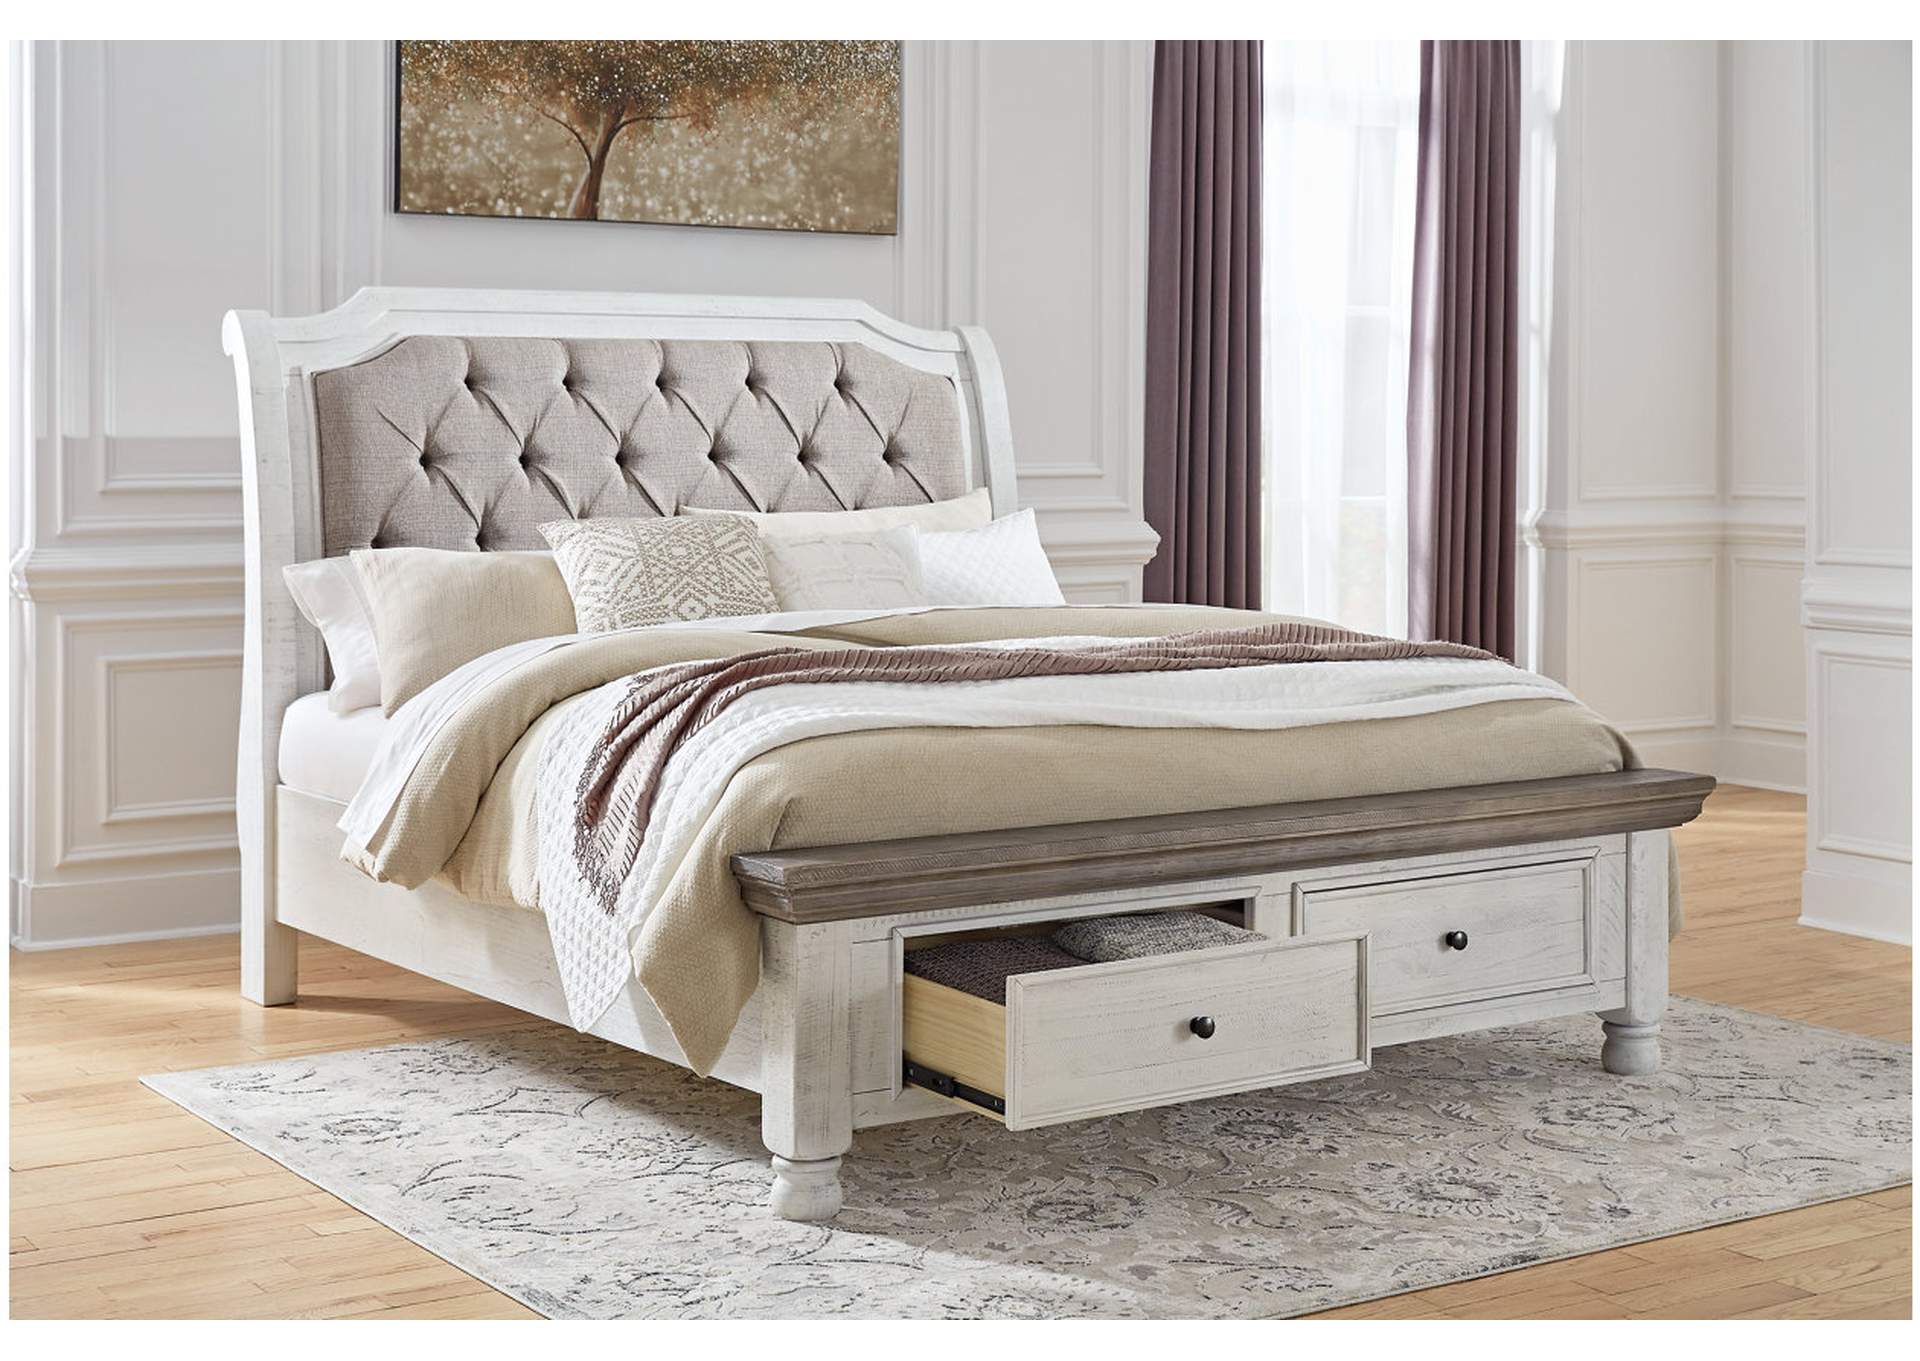 Havalance Queen Sleigh Bed with Storage,Millennium